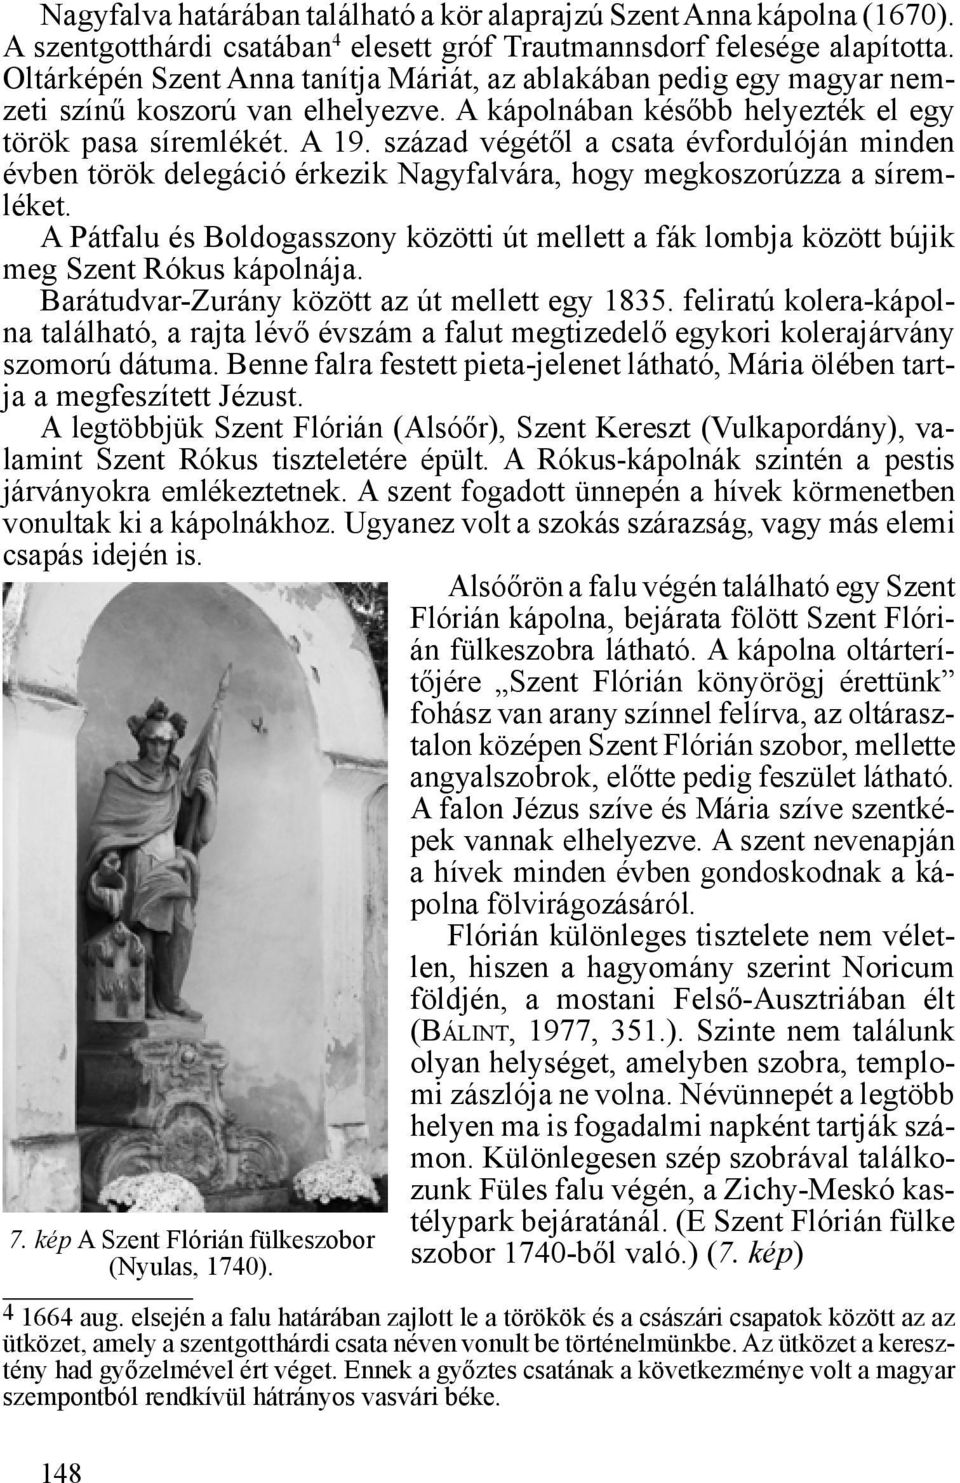 század végétől a csata évfordulóján minden évben török delegáció érkezik Nagyfalvára, hogy megkoszorúzza a síremléket.